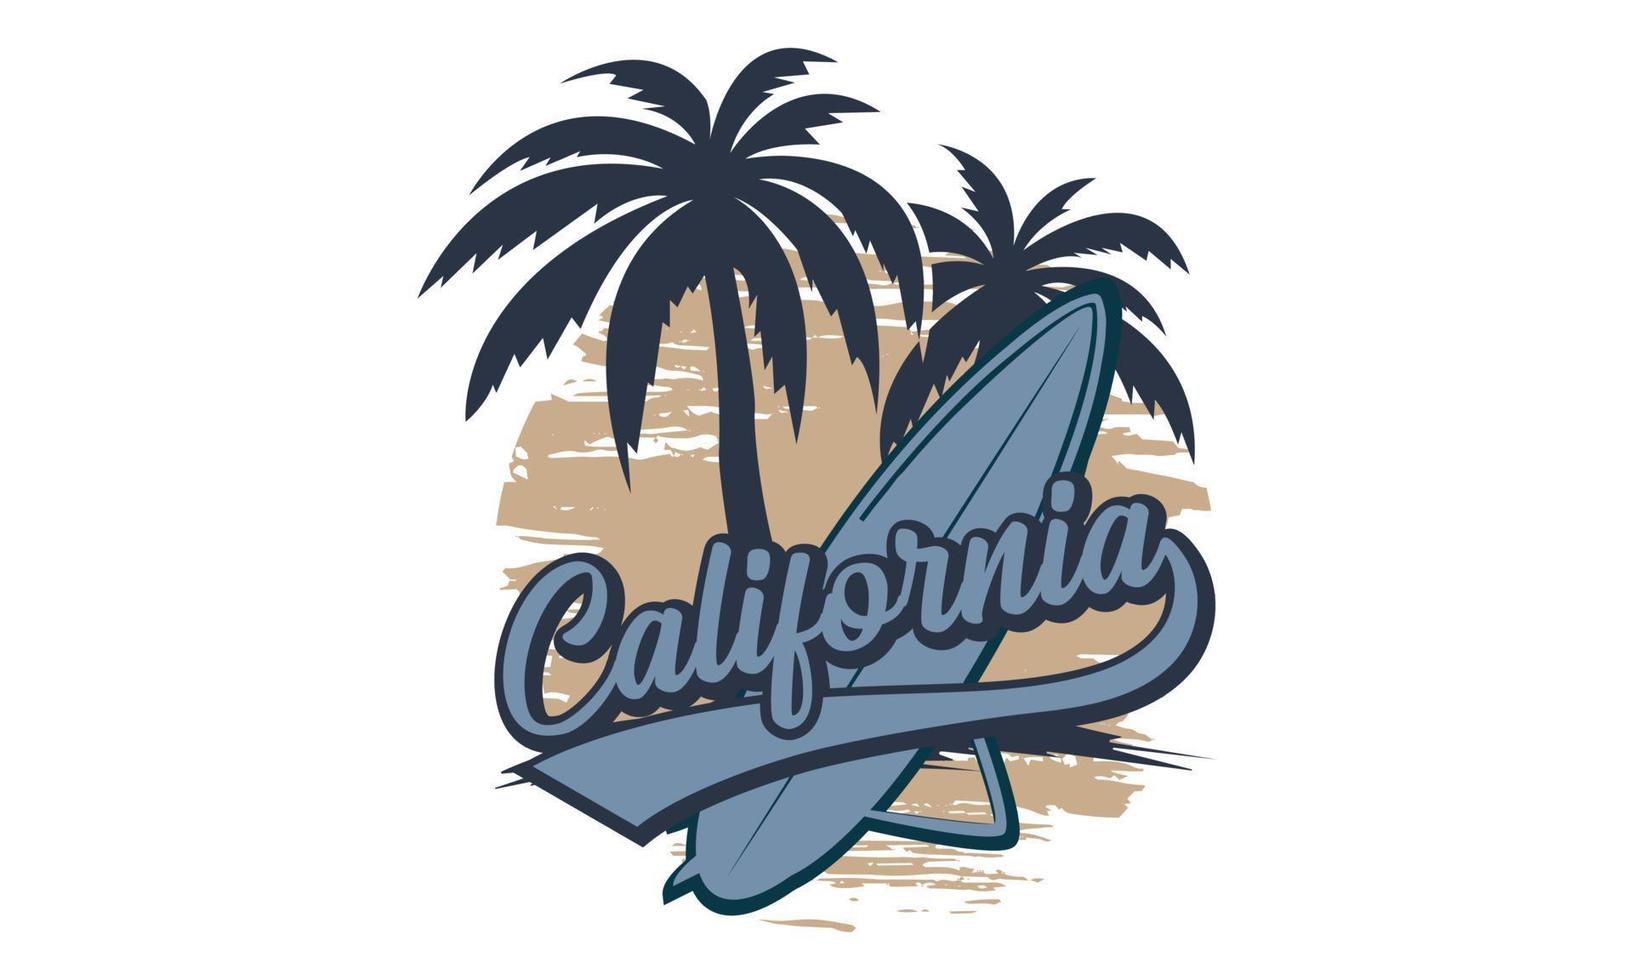 conception de t-shirt de surf californien. t-shirt de typographie de surf de montagne californien enfants créatifs et illustration vectorielle de thème de typographie. vecteur